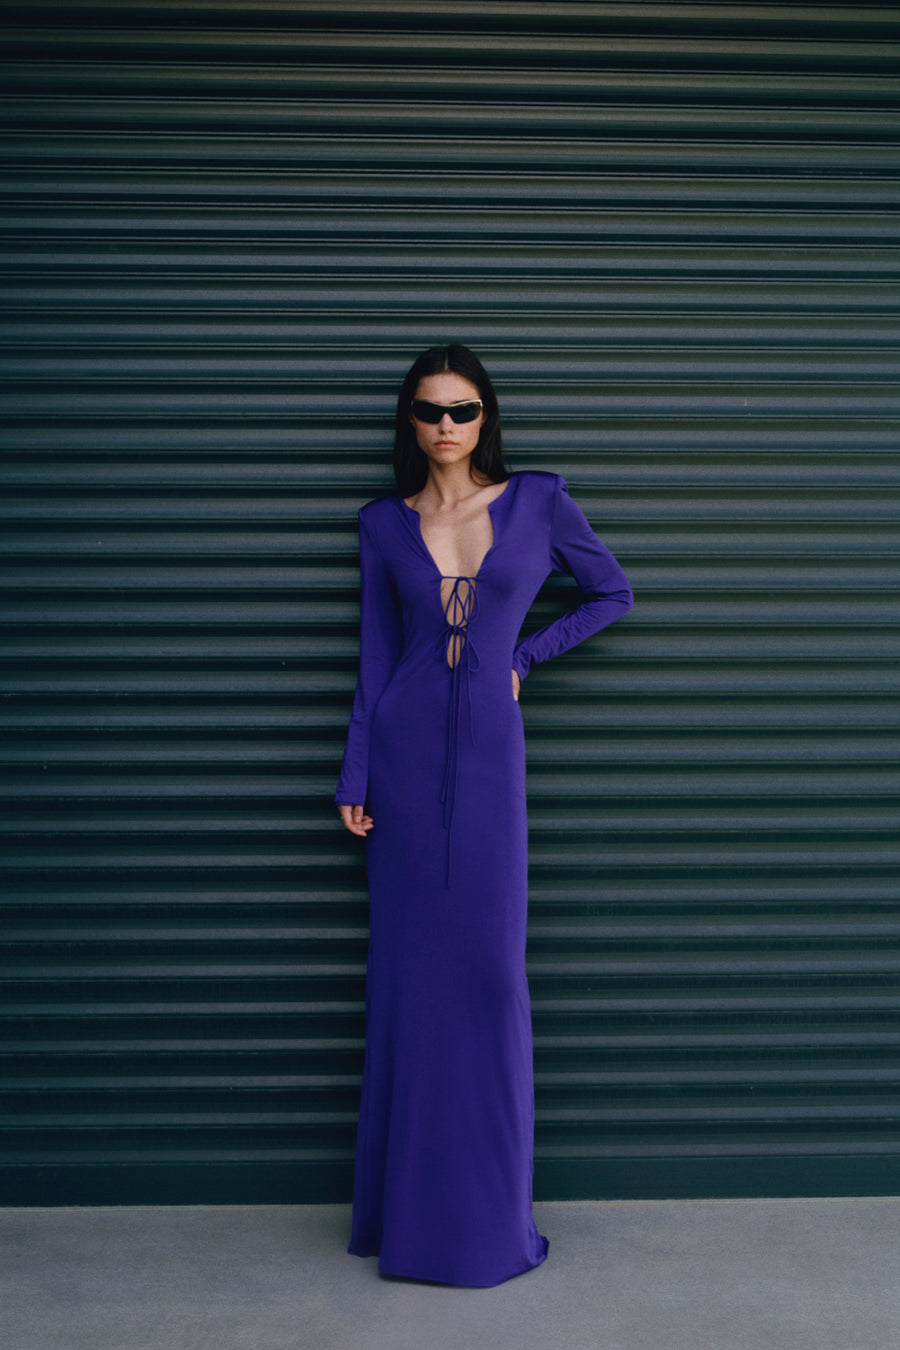 The Bria Violet Maxi Dress